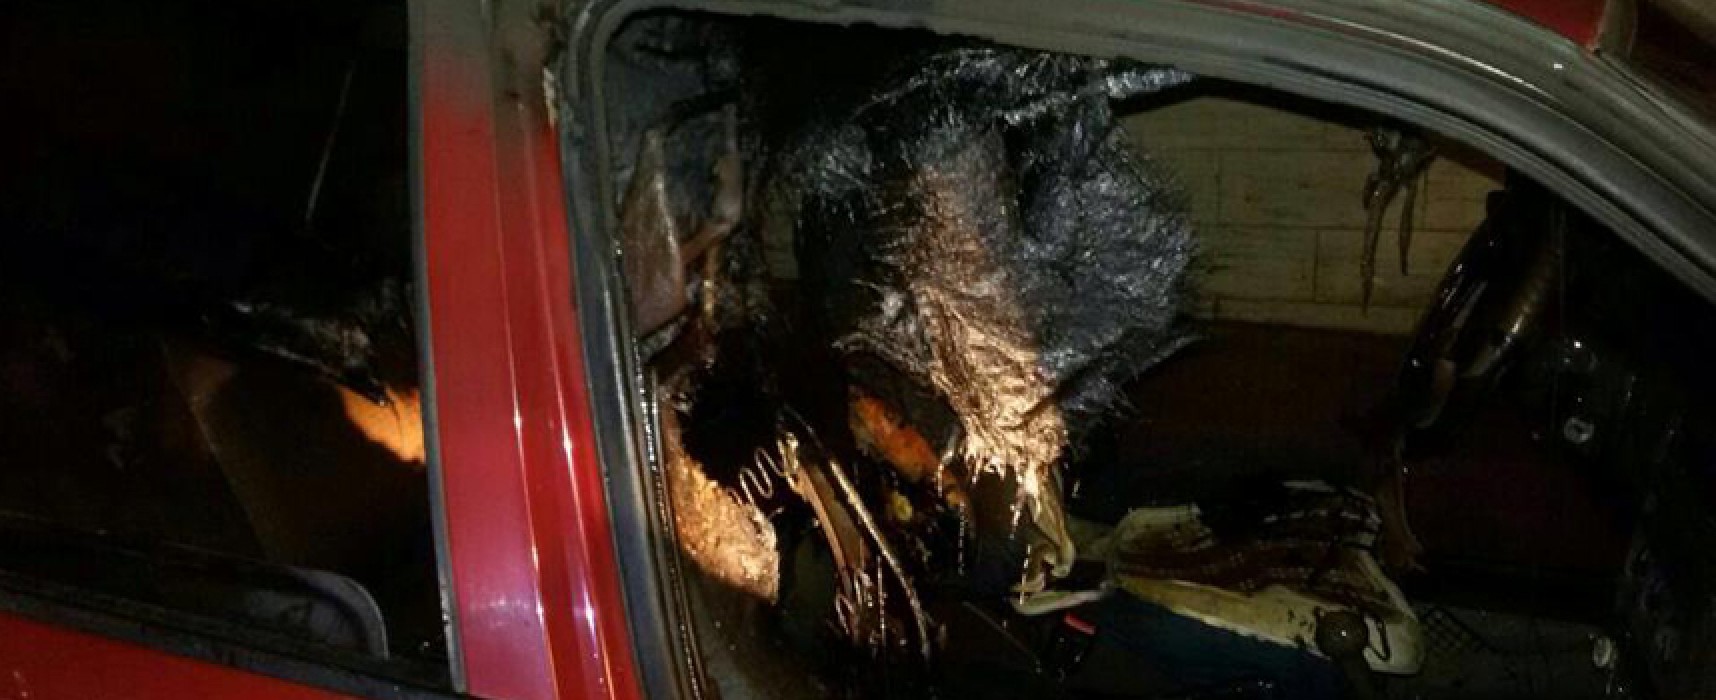 Auto incendiata nella notte tra sabato e domenica, pronto l’intervento dell’OER / FOTO